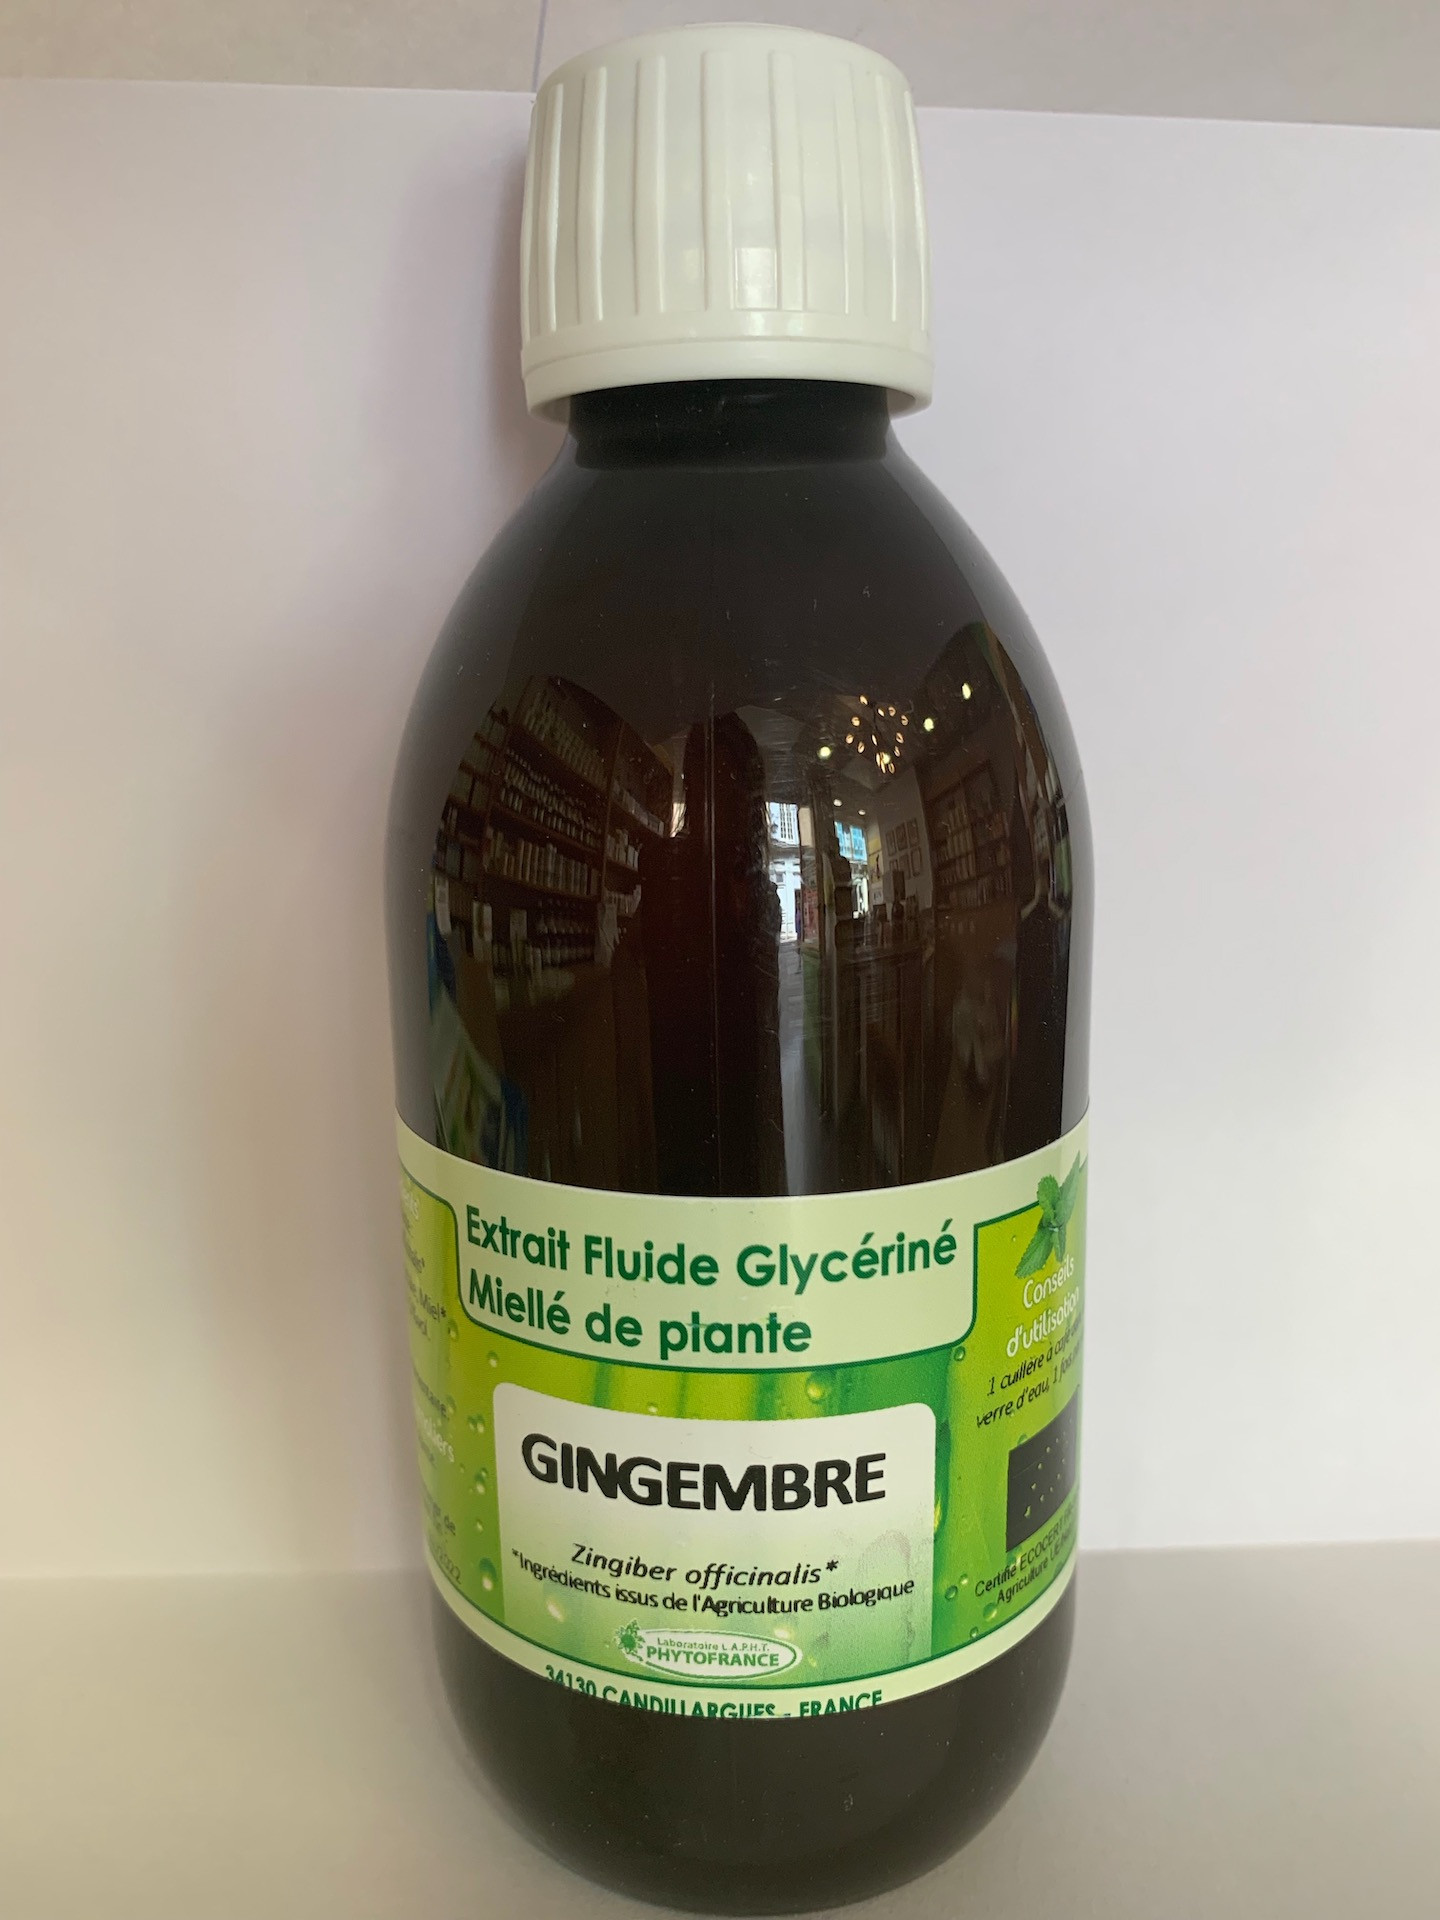 https://www.achetezaupuy.com/50908/gingembre-extrait-fluide-glycerine-mielle-de-plante-bio-phytofrance.jpg